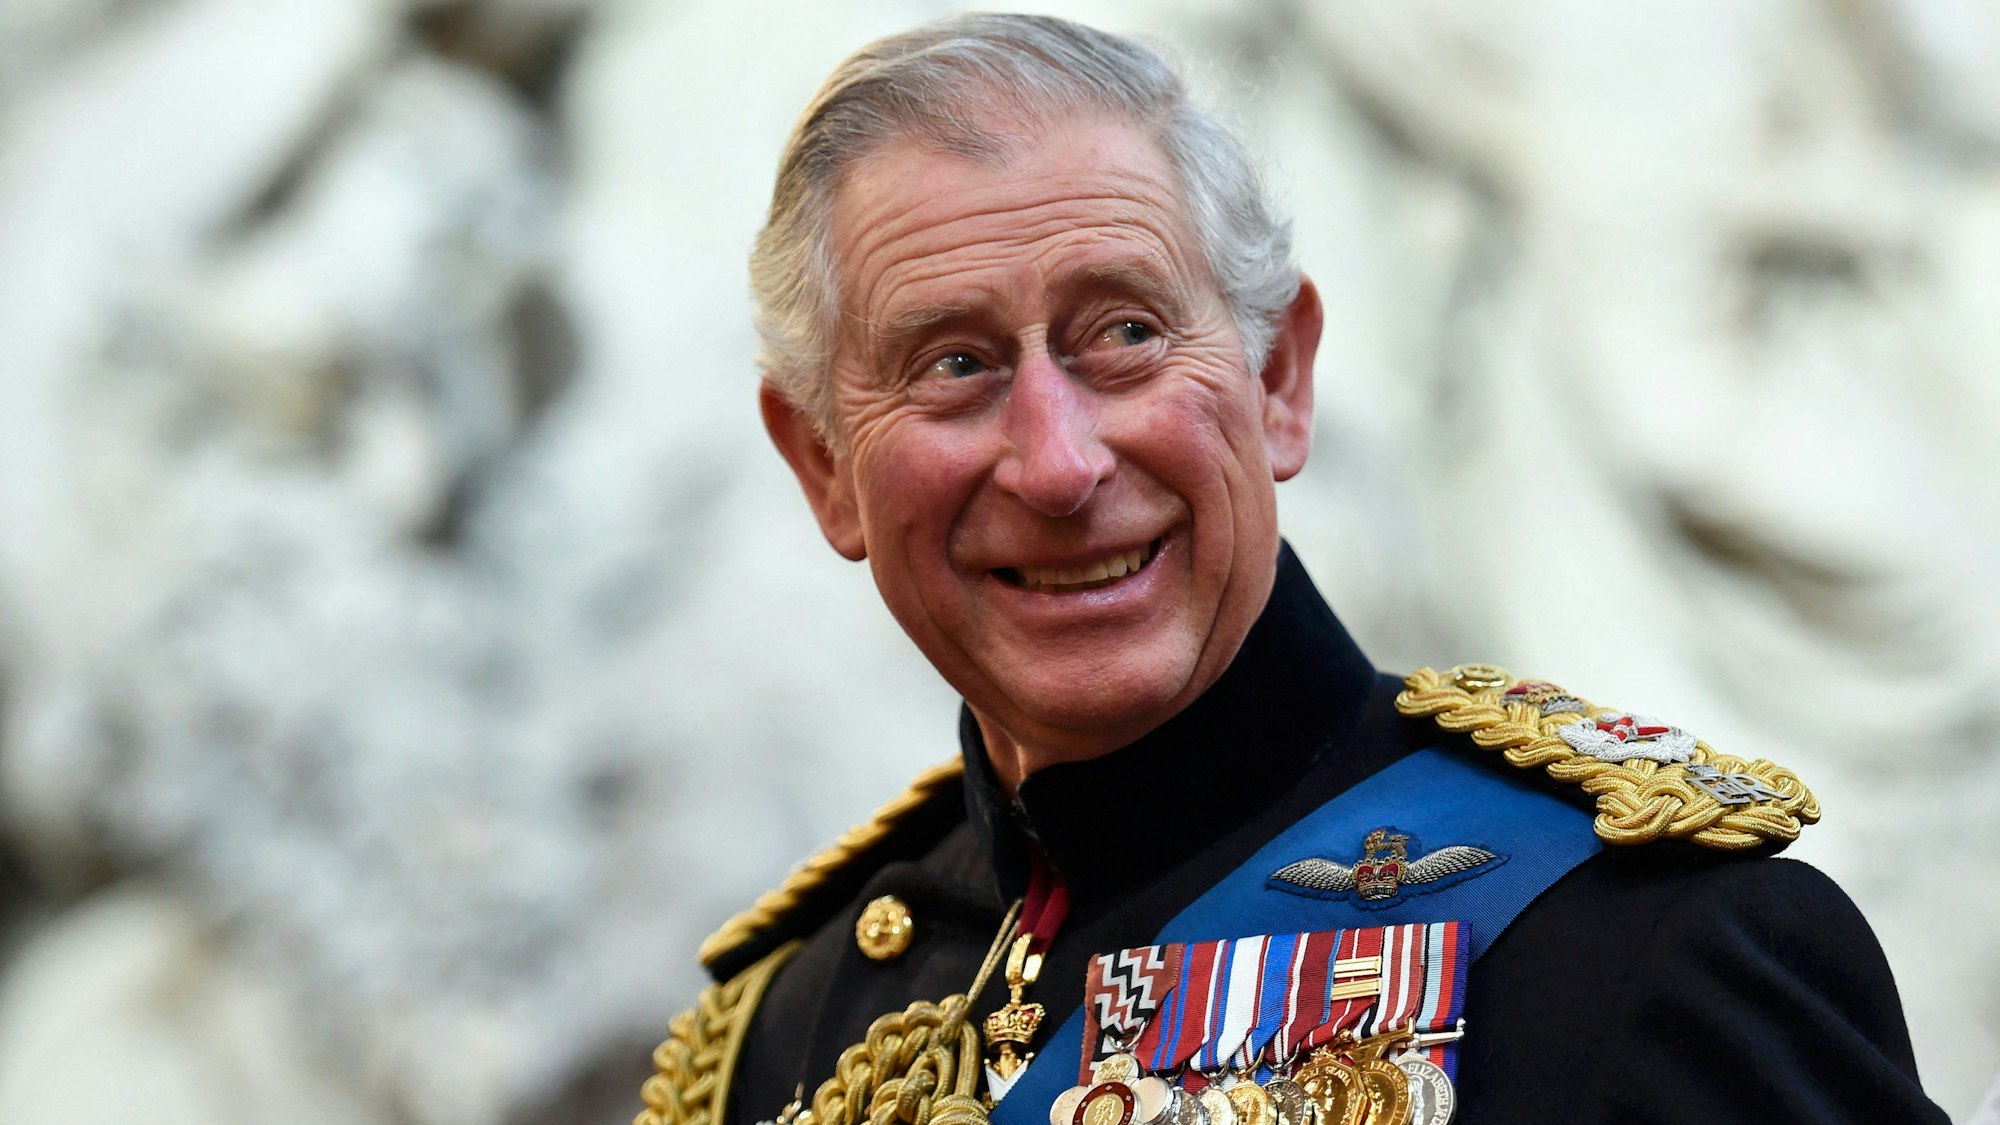 König Charles III., hier auf einem Foto vom März 2015, wird am 6. Mai offiziell gekrönt.